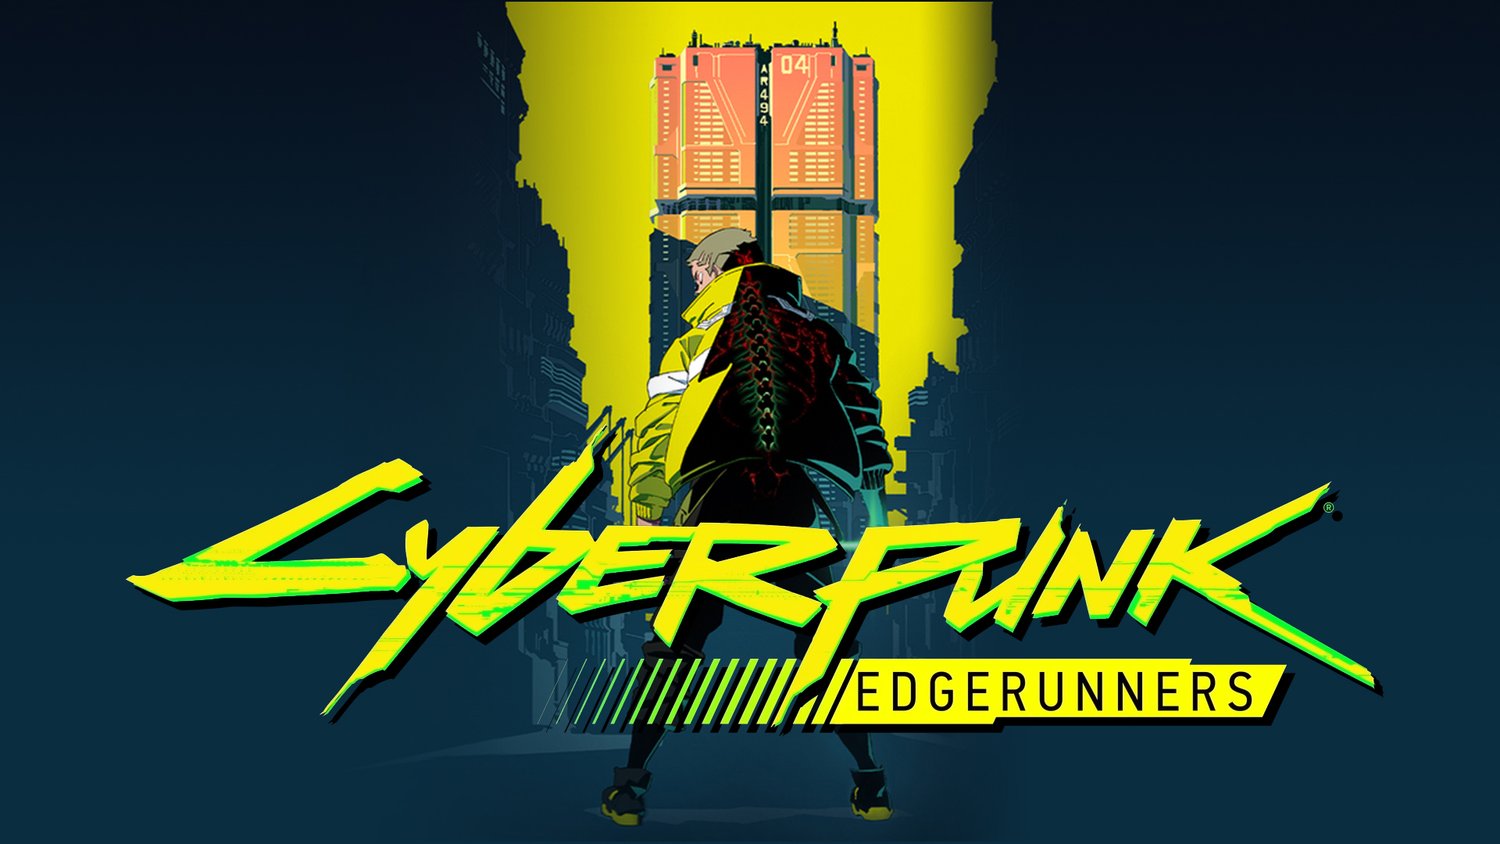 Made a wallpaper for cyberpunk edgerunners - 9GAG